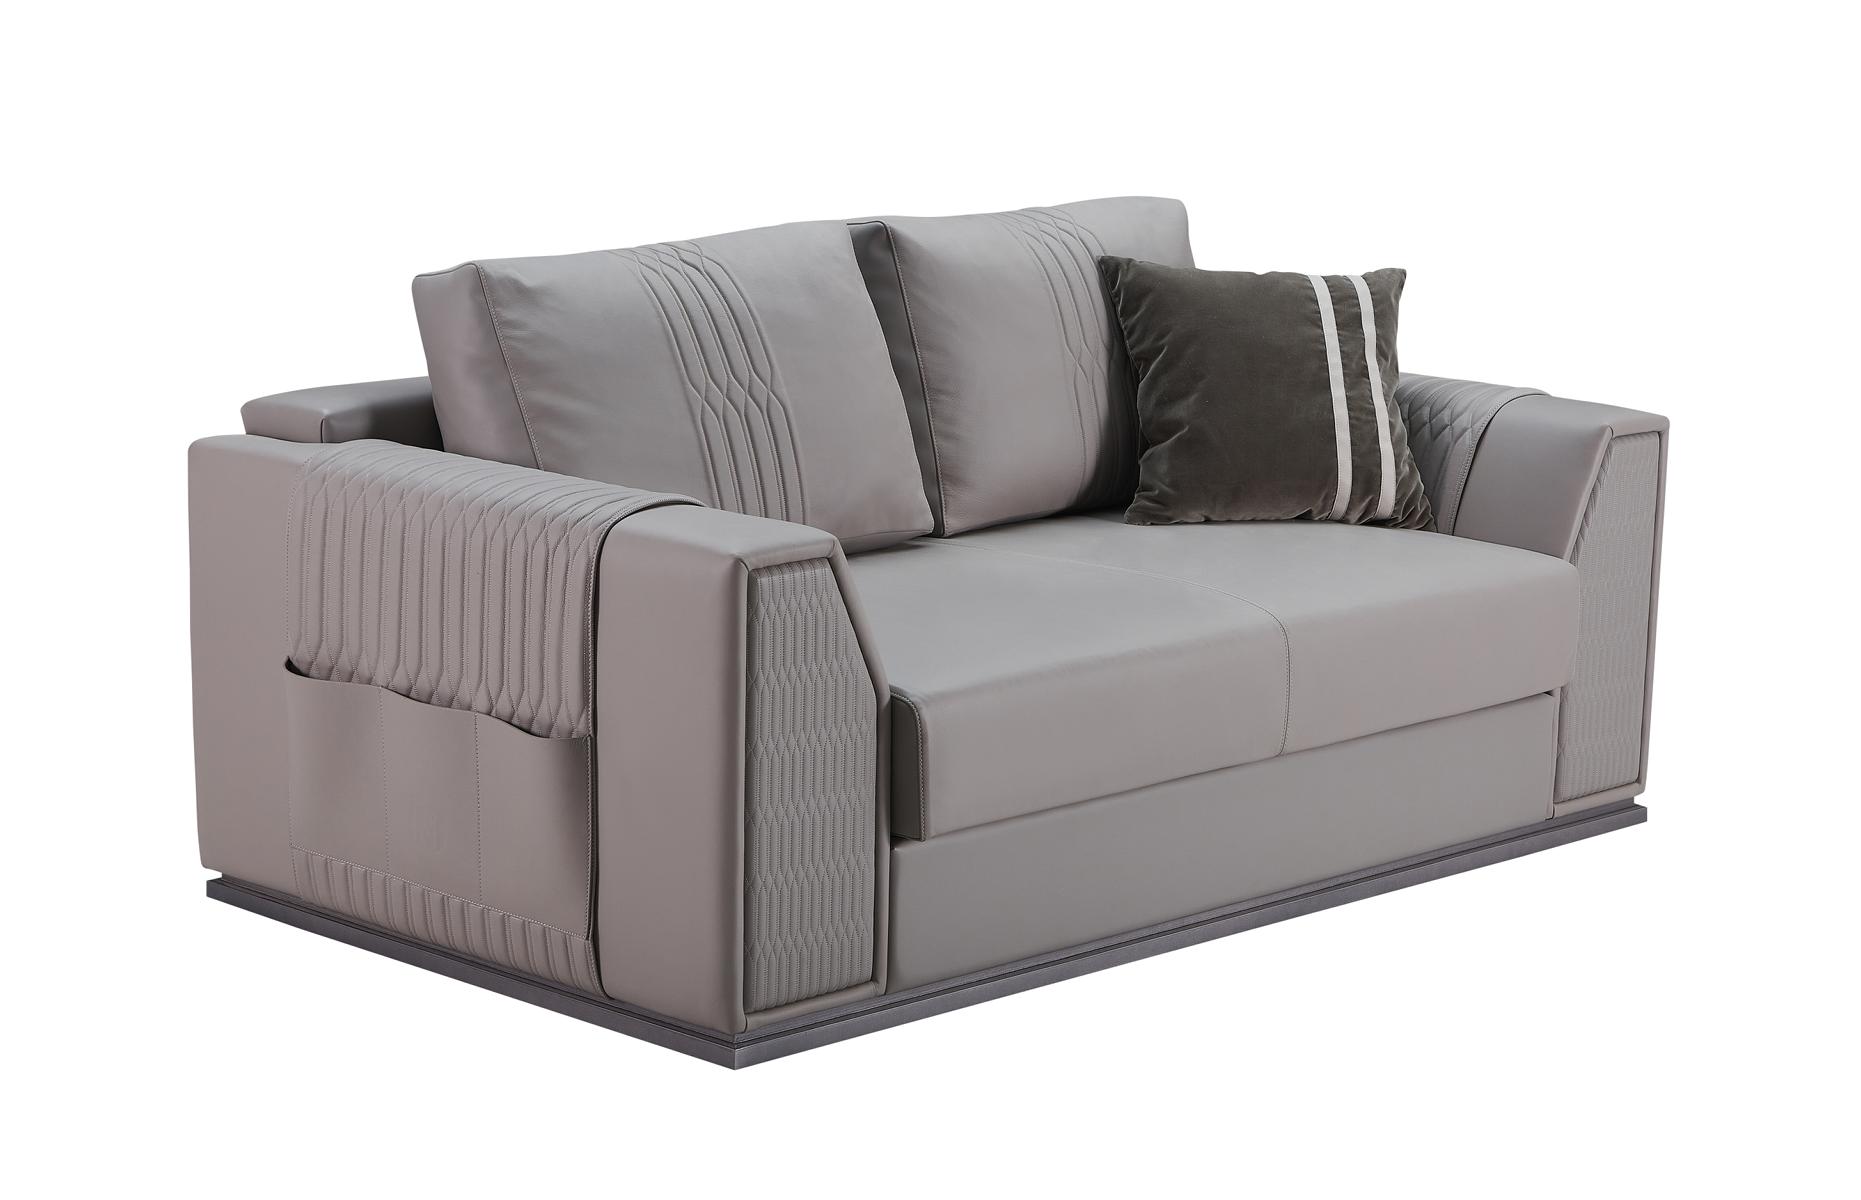 Sofa 2Sitzer Taupe Neu Kreative Modern Design Couch Wohnzimmer Leder Sofas Möbel